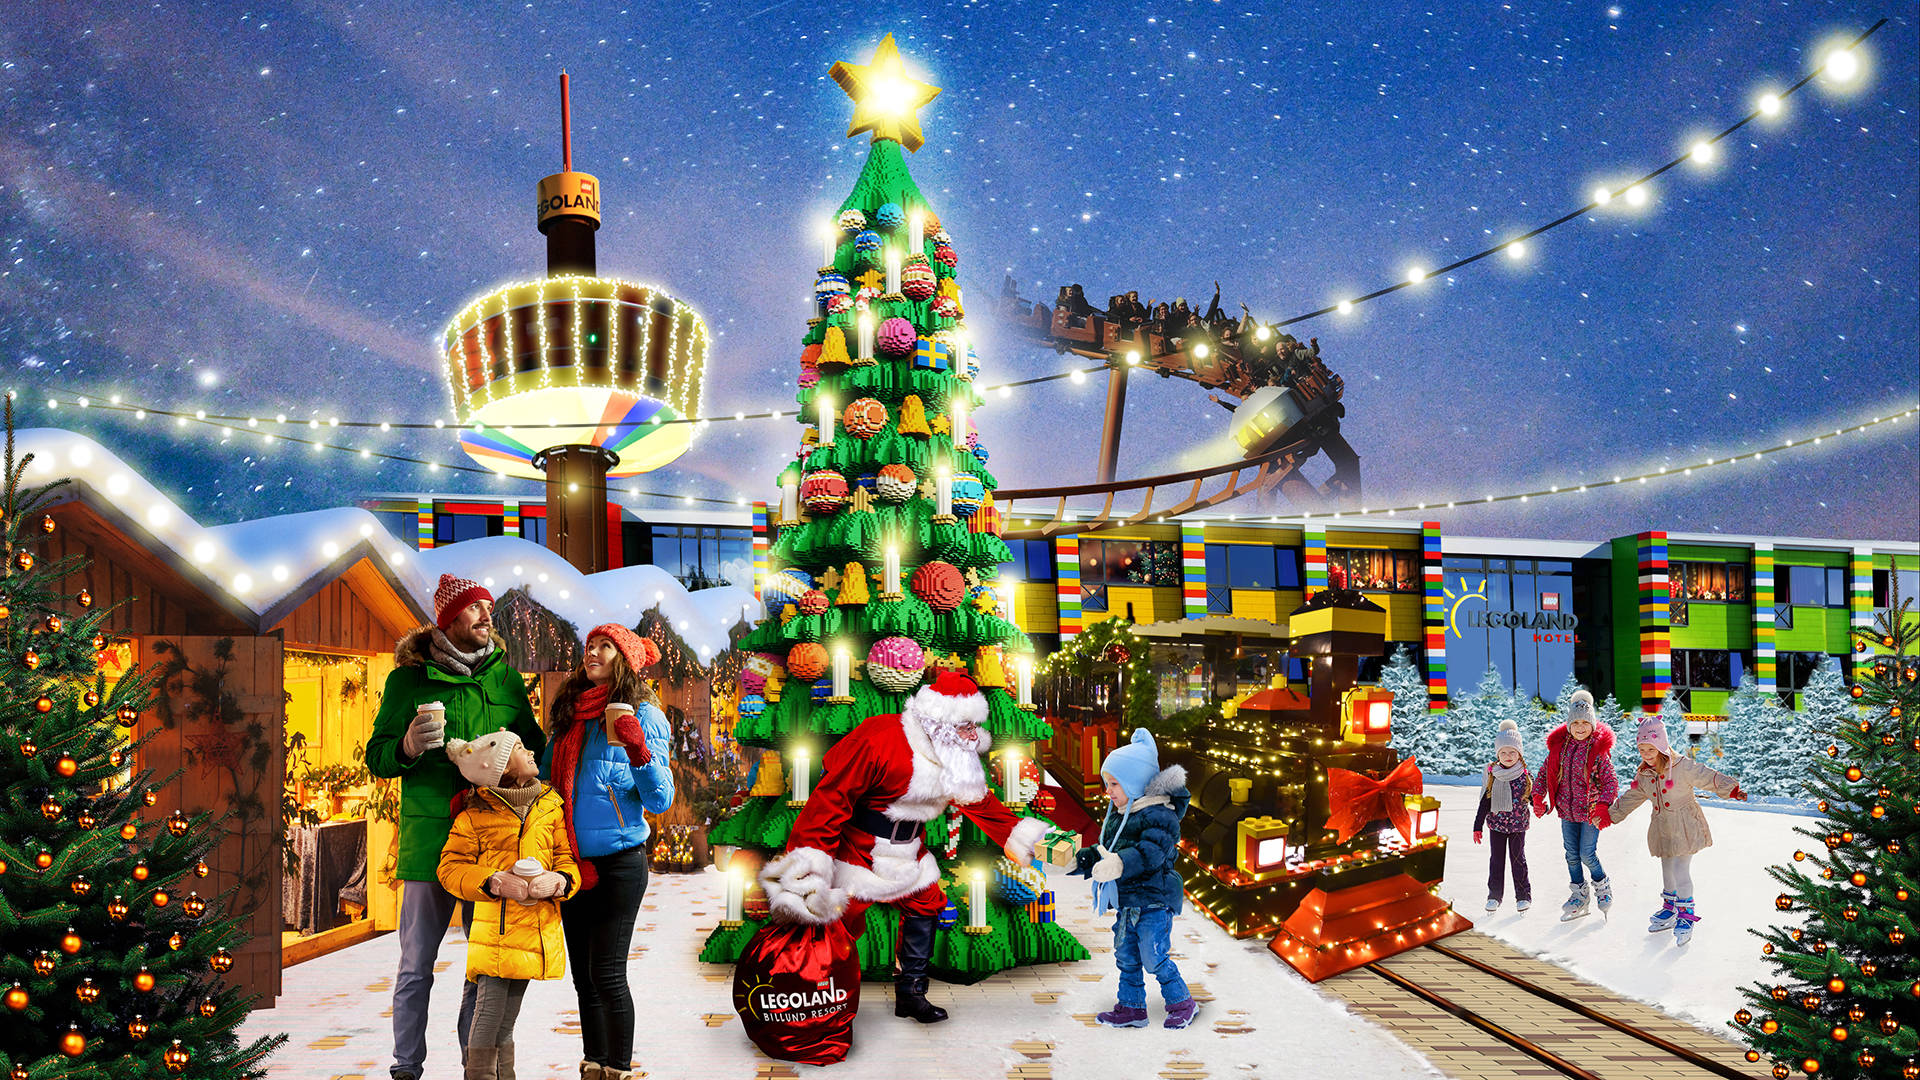 Legoland Christmas Season Wallpaper